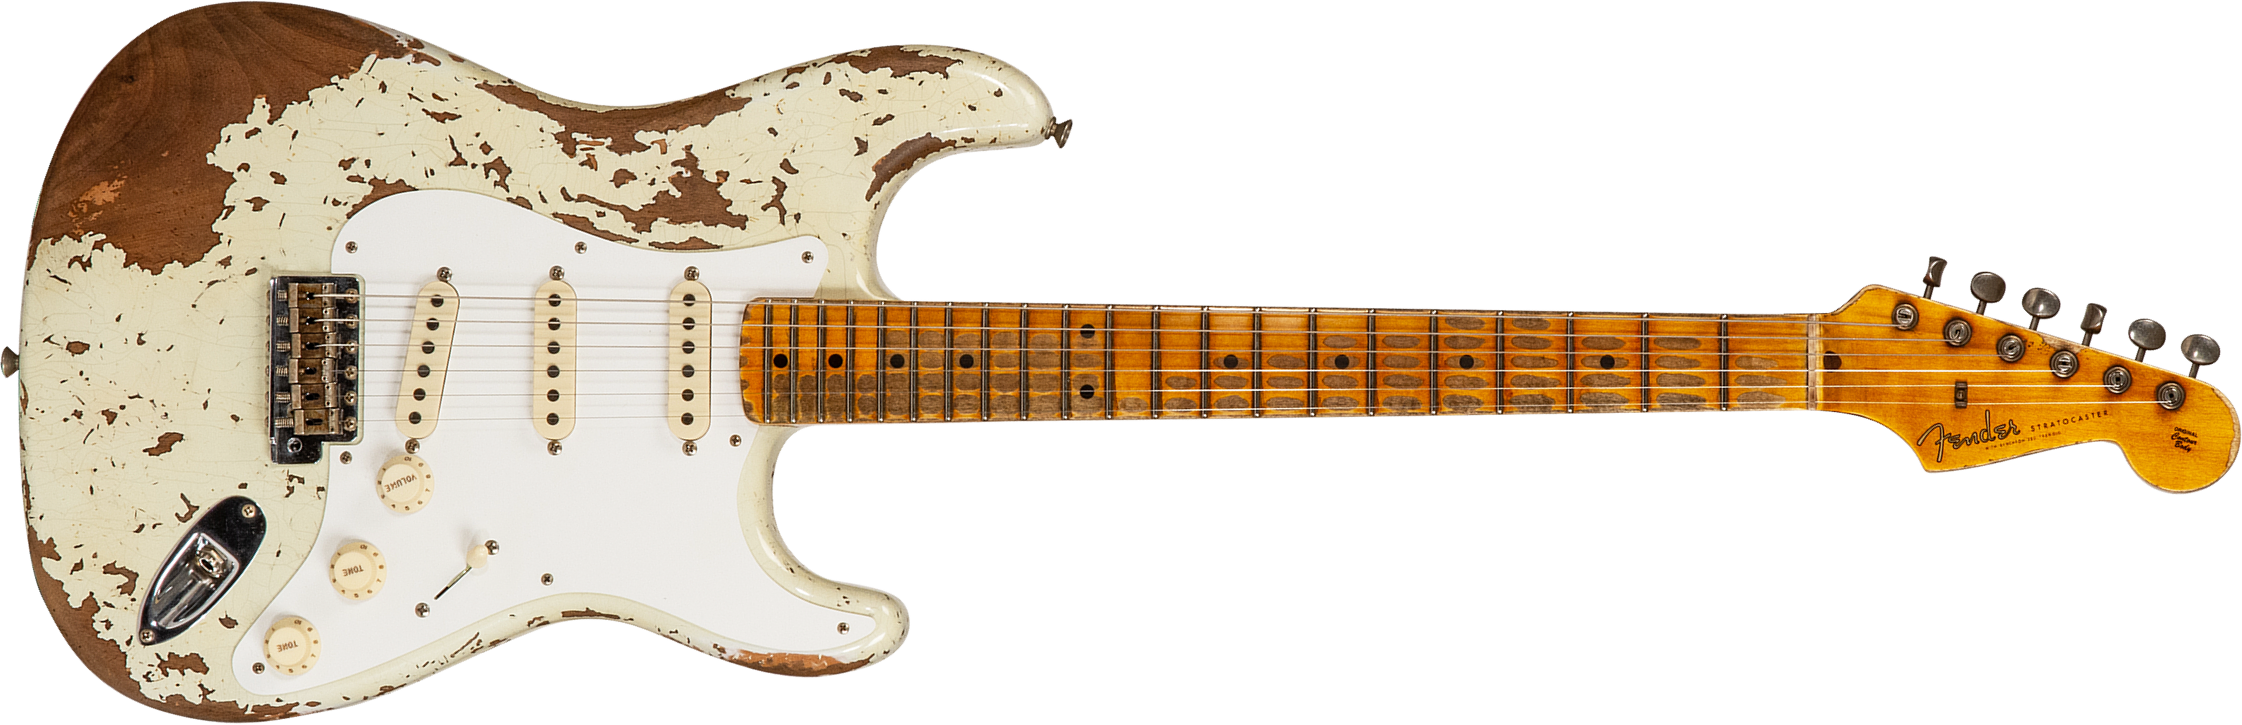 Fender Custom Shop Strat 1956 3s Trem Mn #cz568636 - Super Heavy Relic Aged India Ivory - Guitare Électrique Forme Str - Main picture